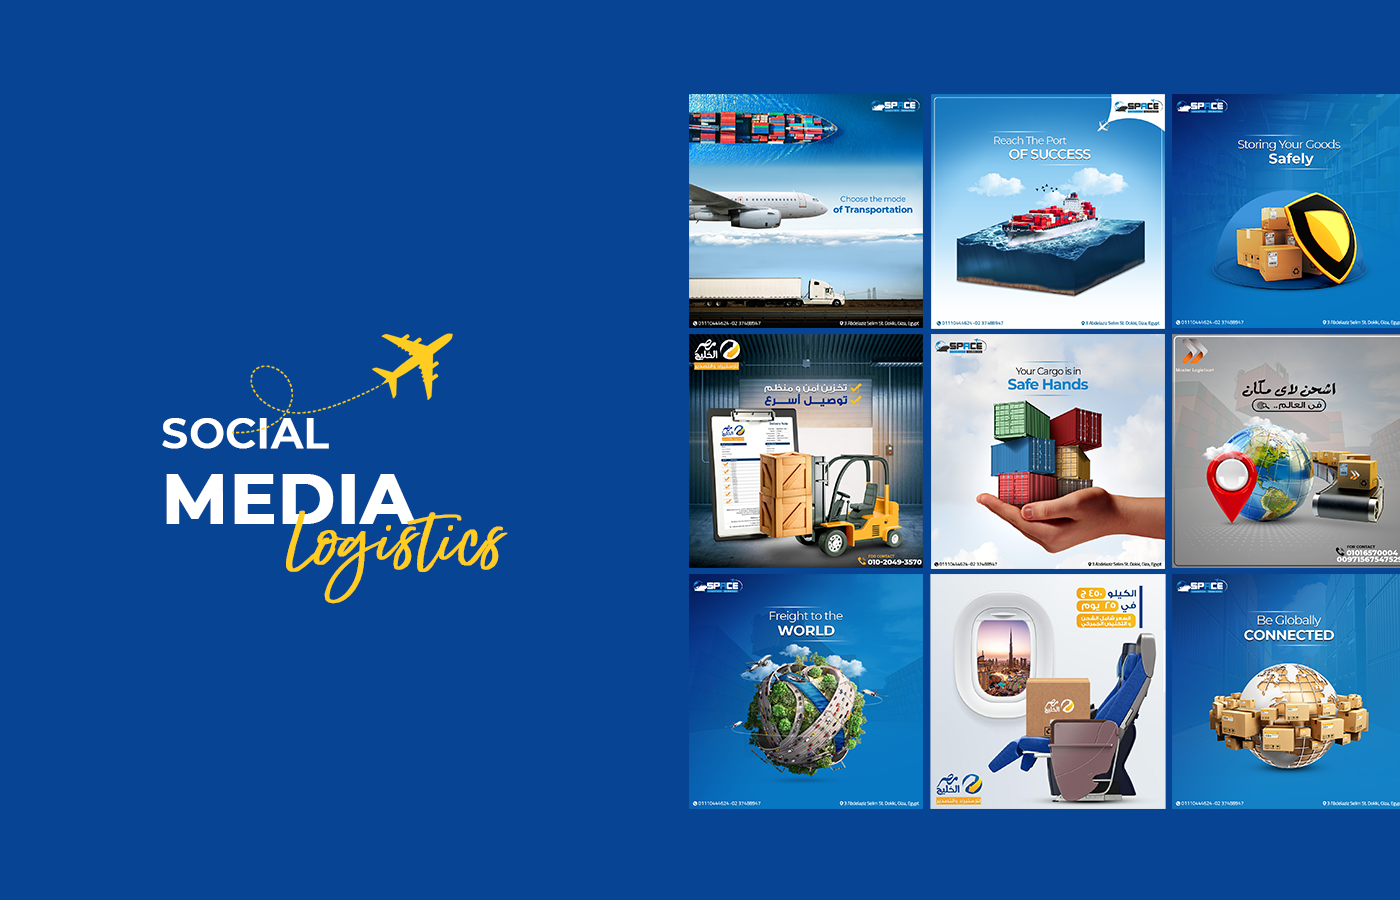 Advertising  Cargo delivery freight Logistics shipping social media Social media post Socialmedia Transport